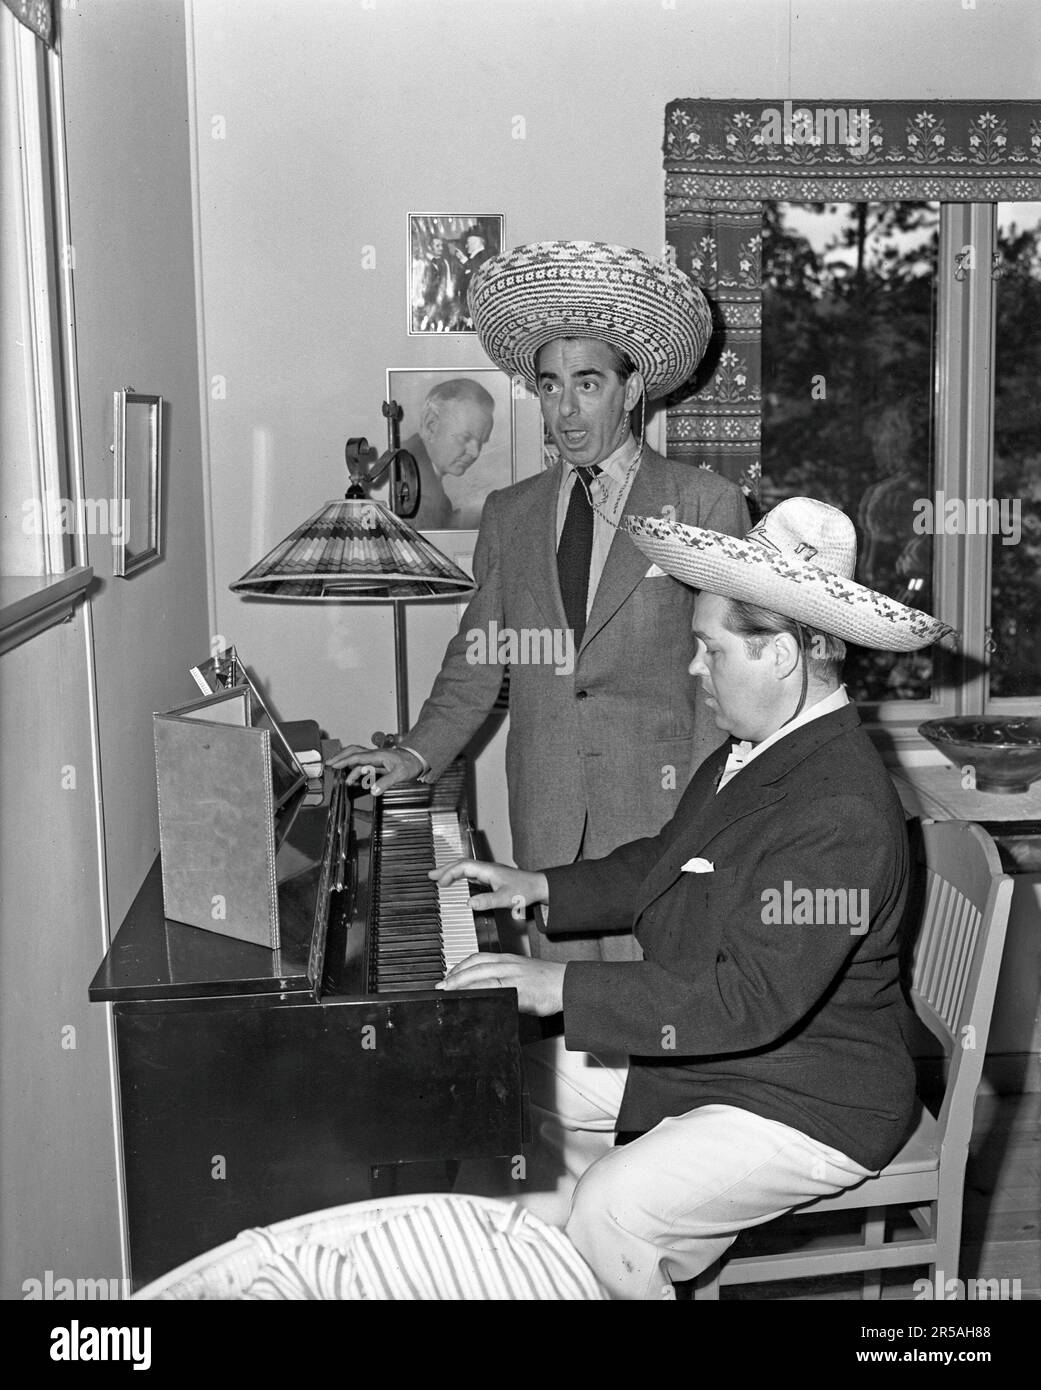 In den 1940er Jahren. Zwei Männer in mexikanischen Hüten am Klavier, einer spielt und einer singt. Sie spielen den Operasinger Jussi Björling 1911-1969 und den amerikanischen Moviestar Eddie Cantor. Schweden 1946 Ref. 218a-1 Stockfoto